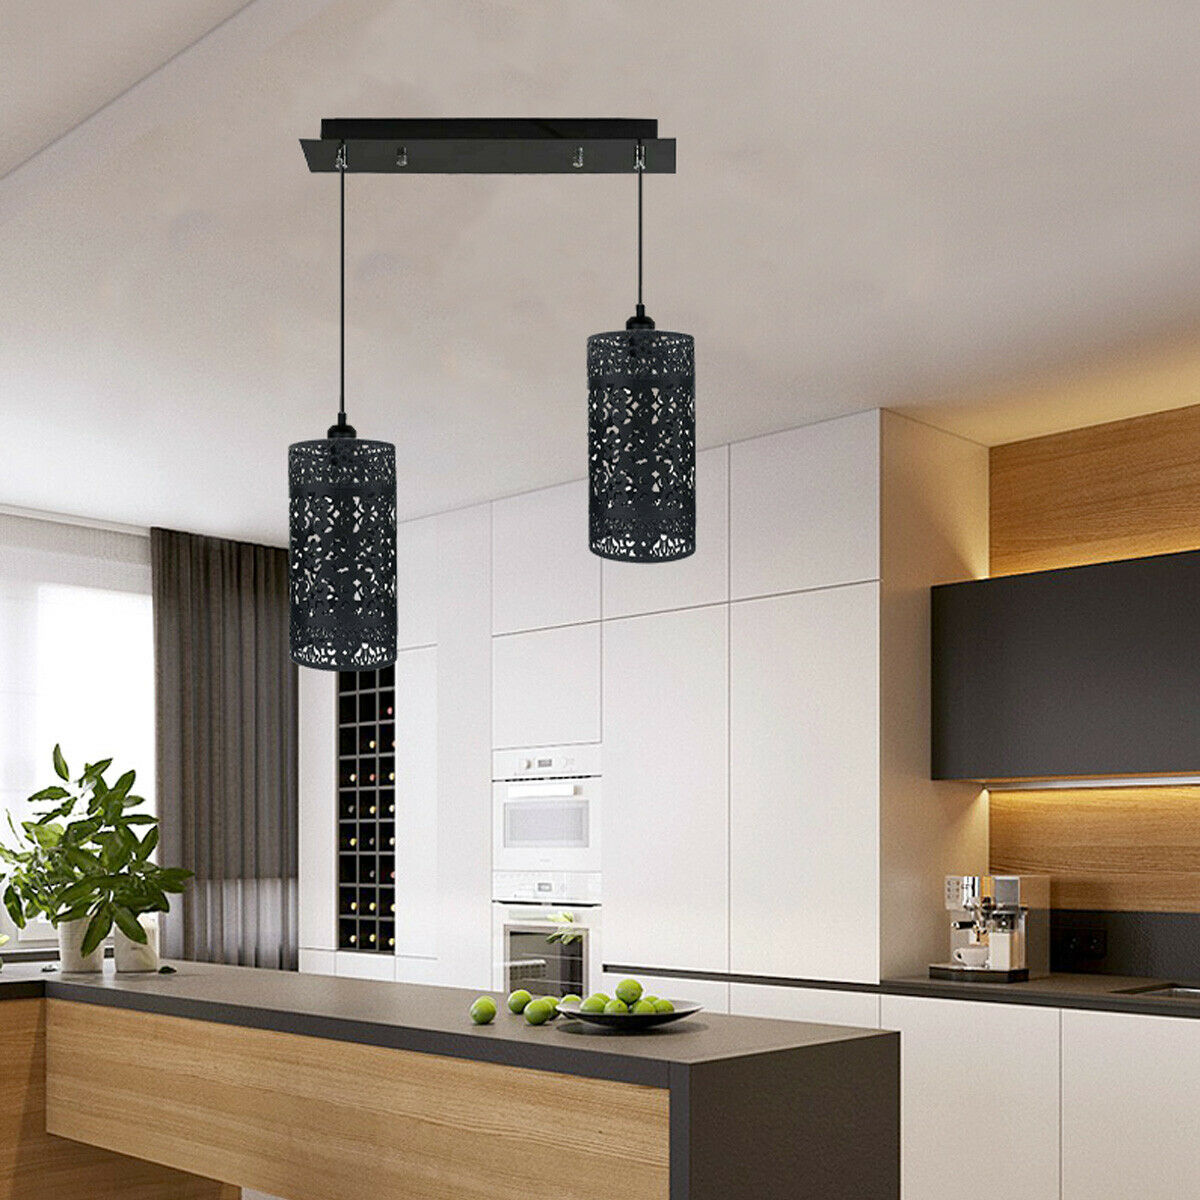 Double Head Black Pendant Lighting Cage 40cm Ceiling Light~1591 - LEDSone UK Ltd